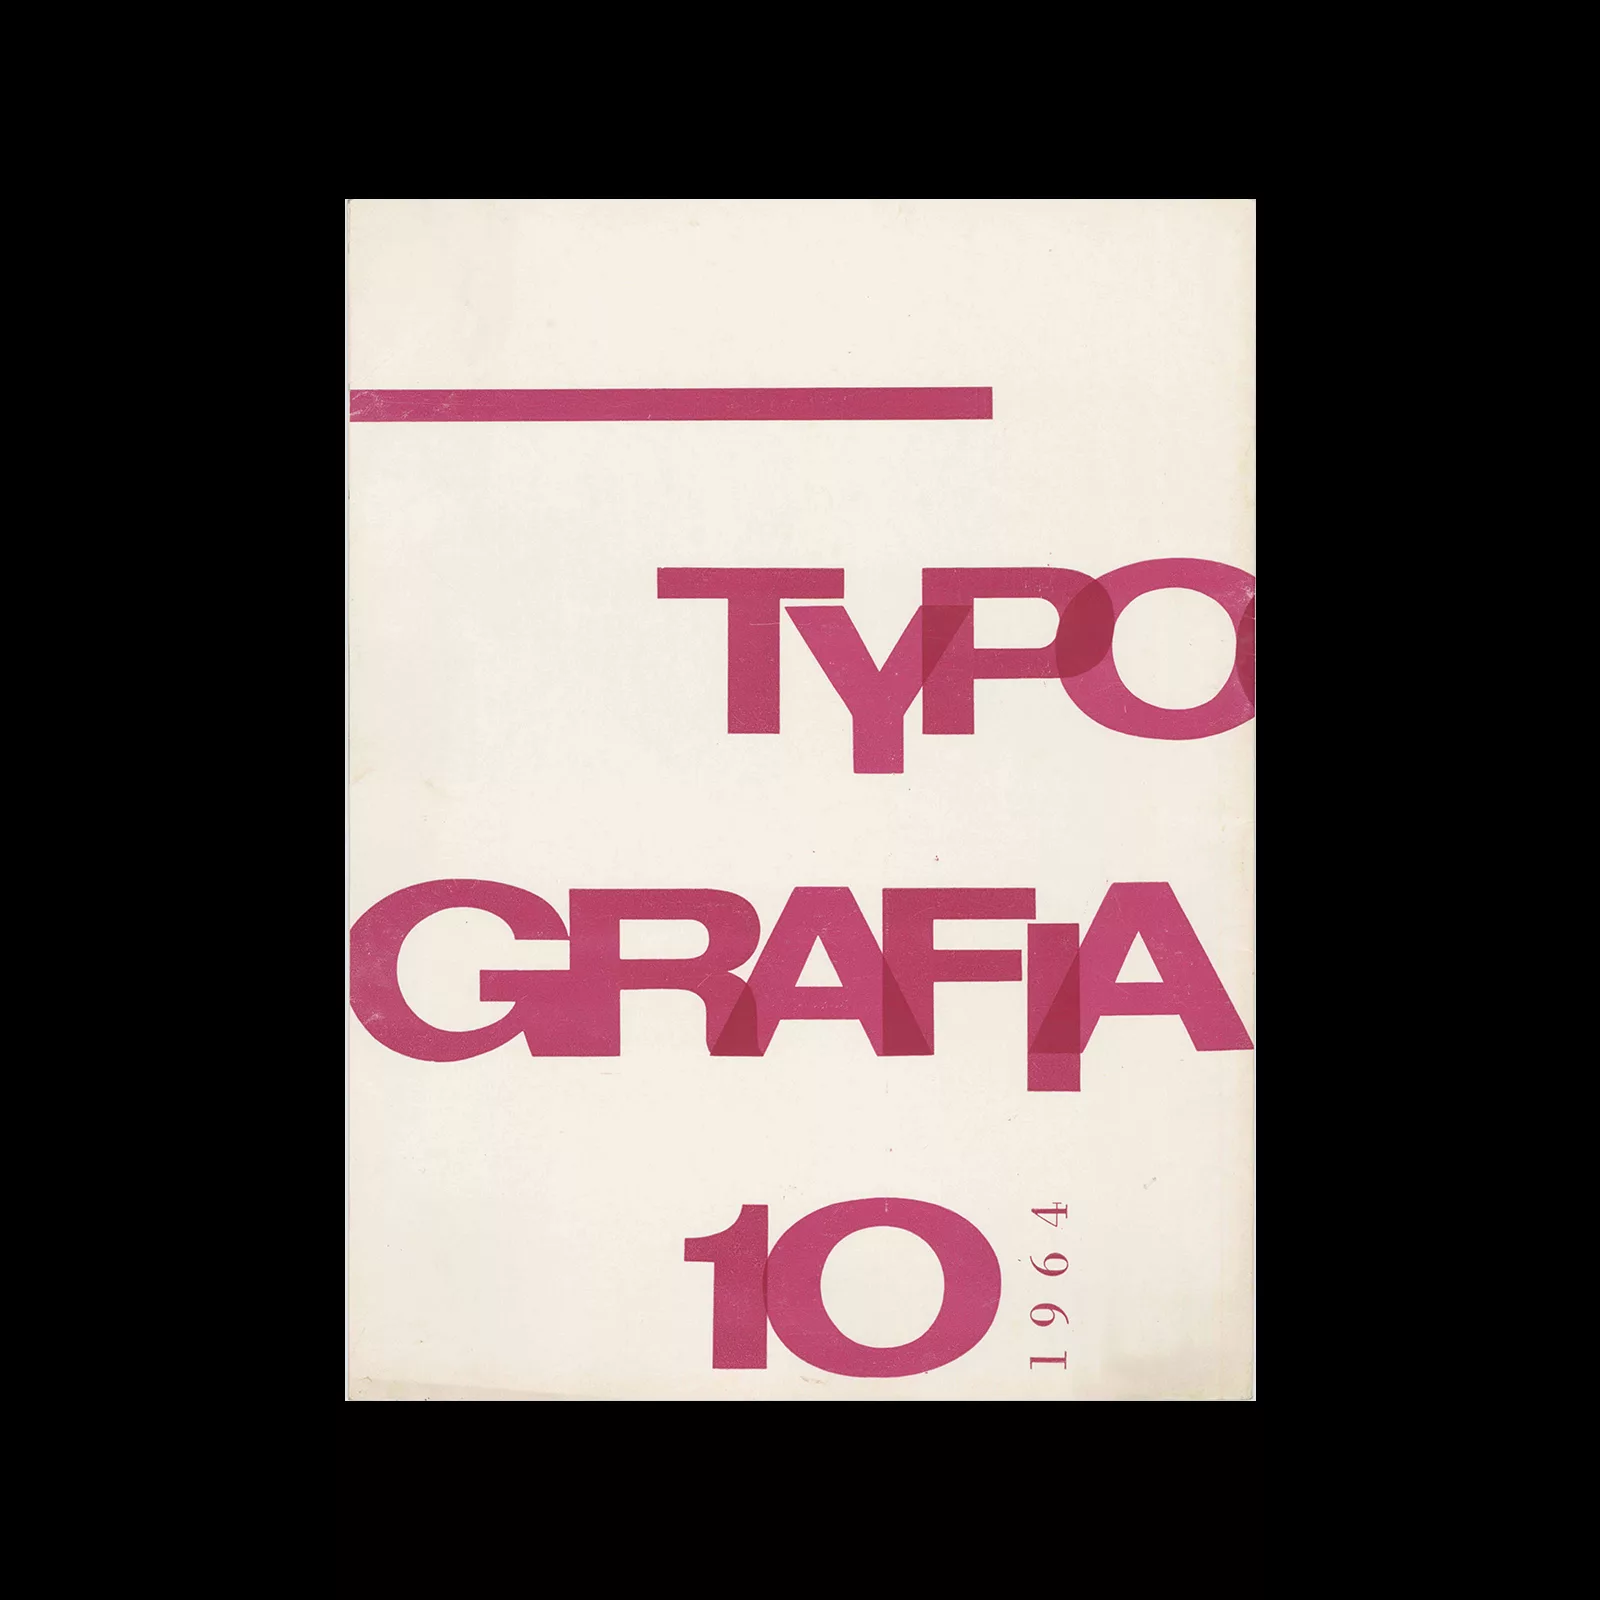 Typografia, ročník 67, 10, 1964. Cover design by Antonin Ernest